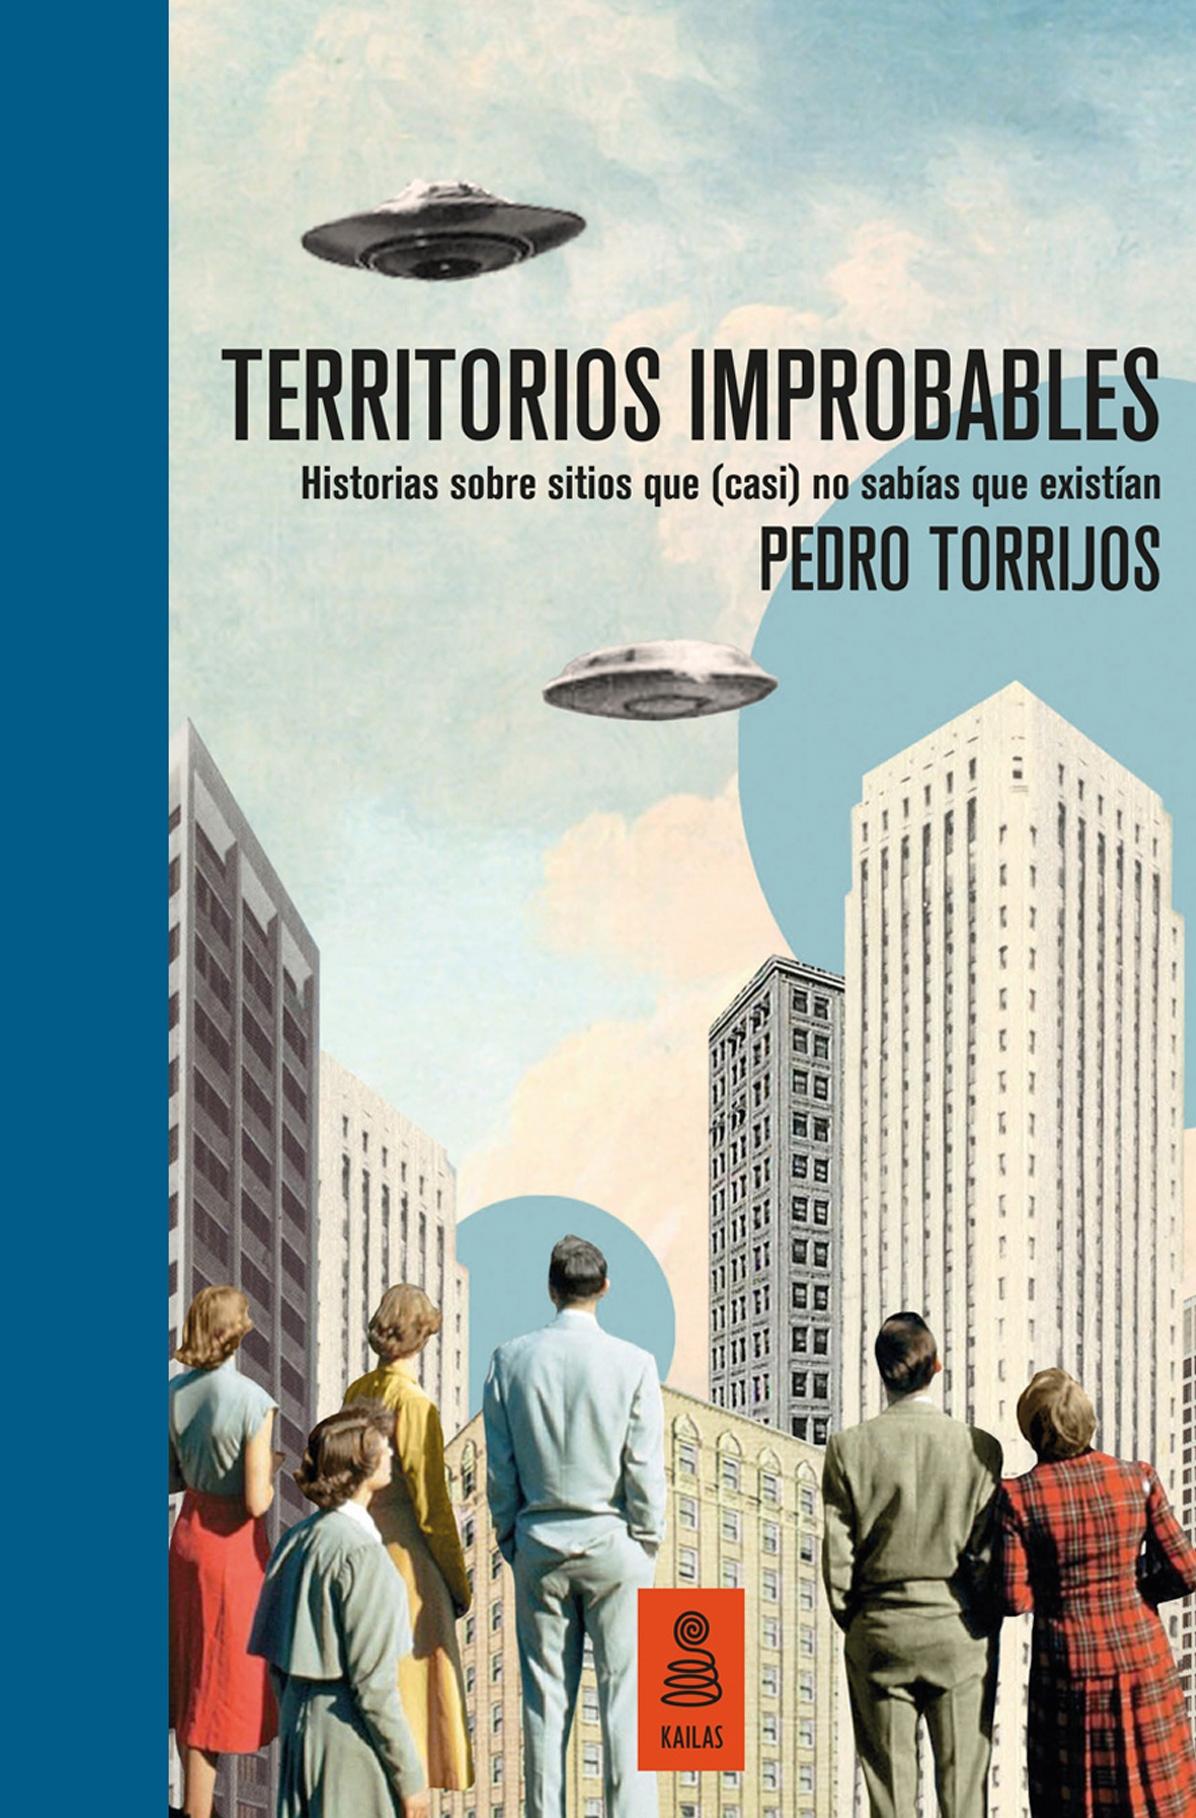 Territorios improbables (Edición limitada y numerada) "Historias sobre lugares que (casi) no sabías que existían". 